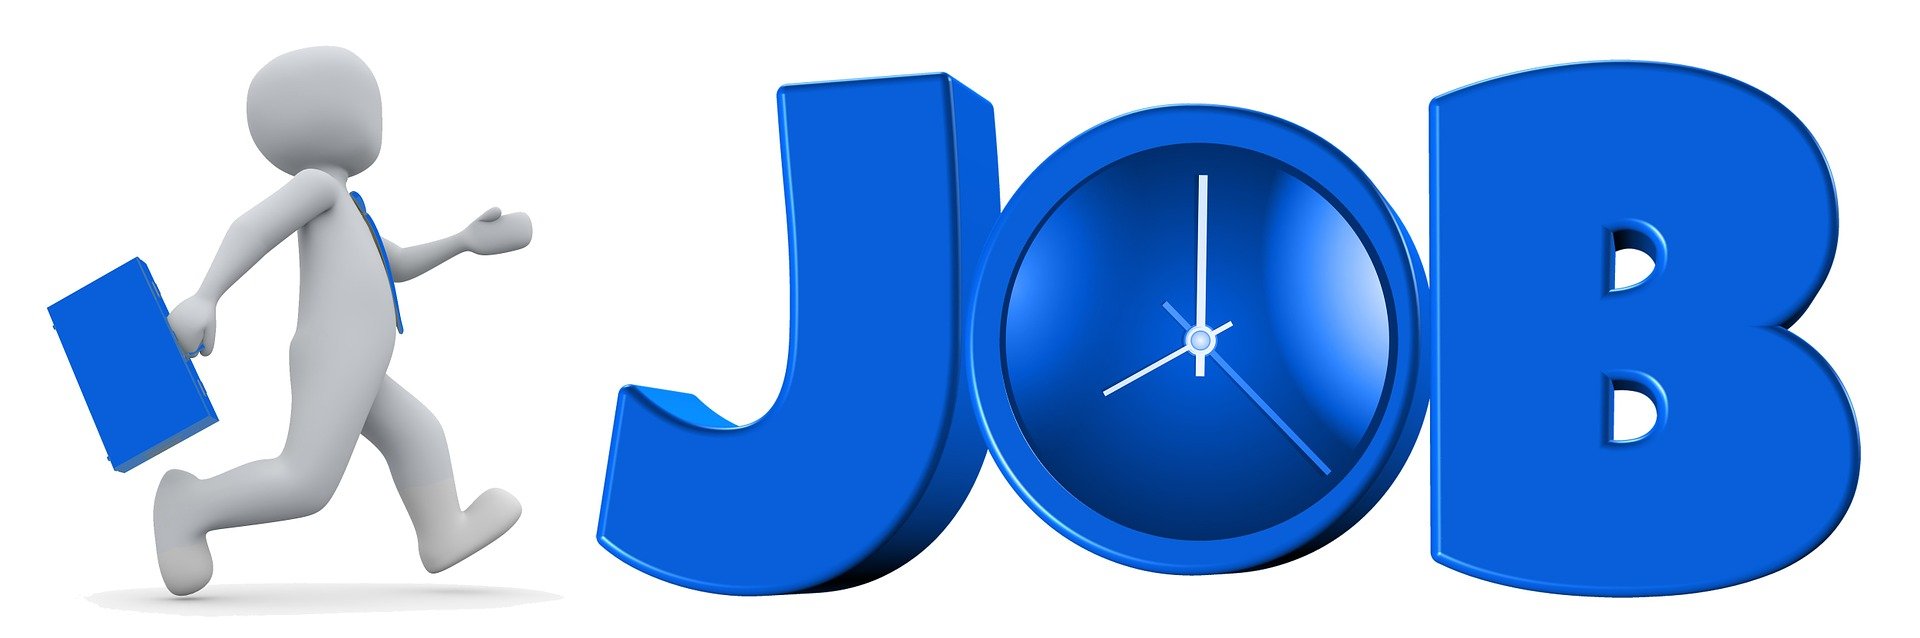 Ein Menchen mit einel blauen Koffer geht in die Richtung der drei großen blauen Buchstaben JOB. In der J ist eine Uhr eingefasst, die 8 Uhr zeigt.